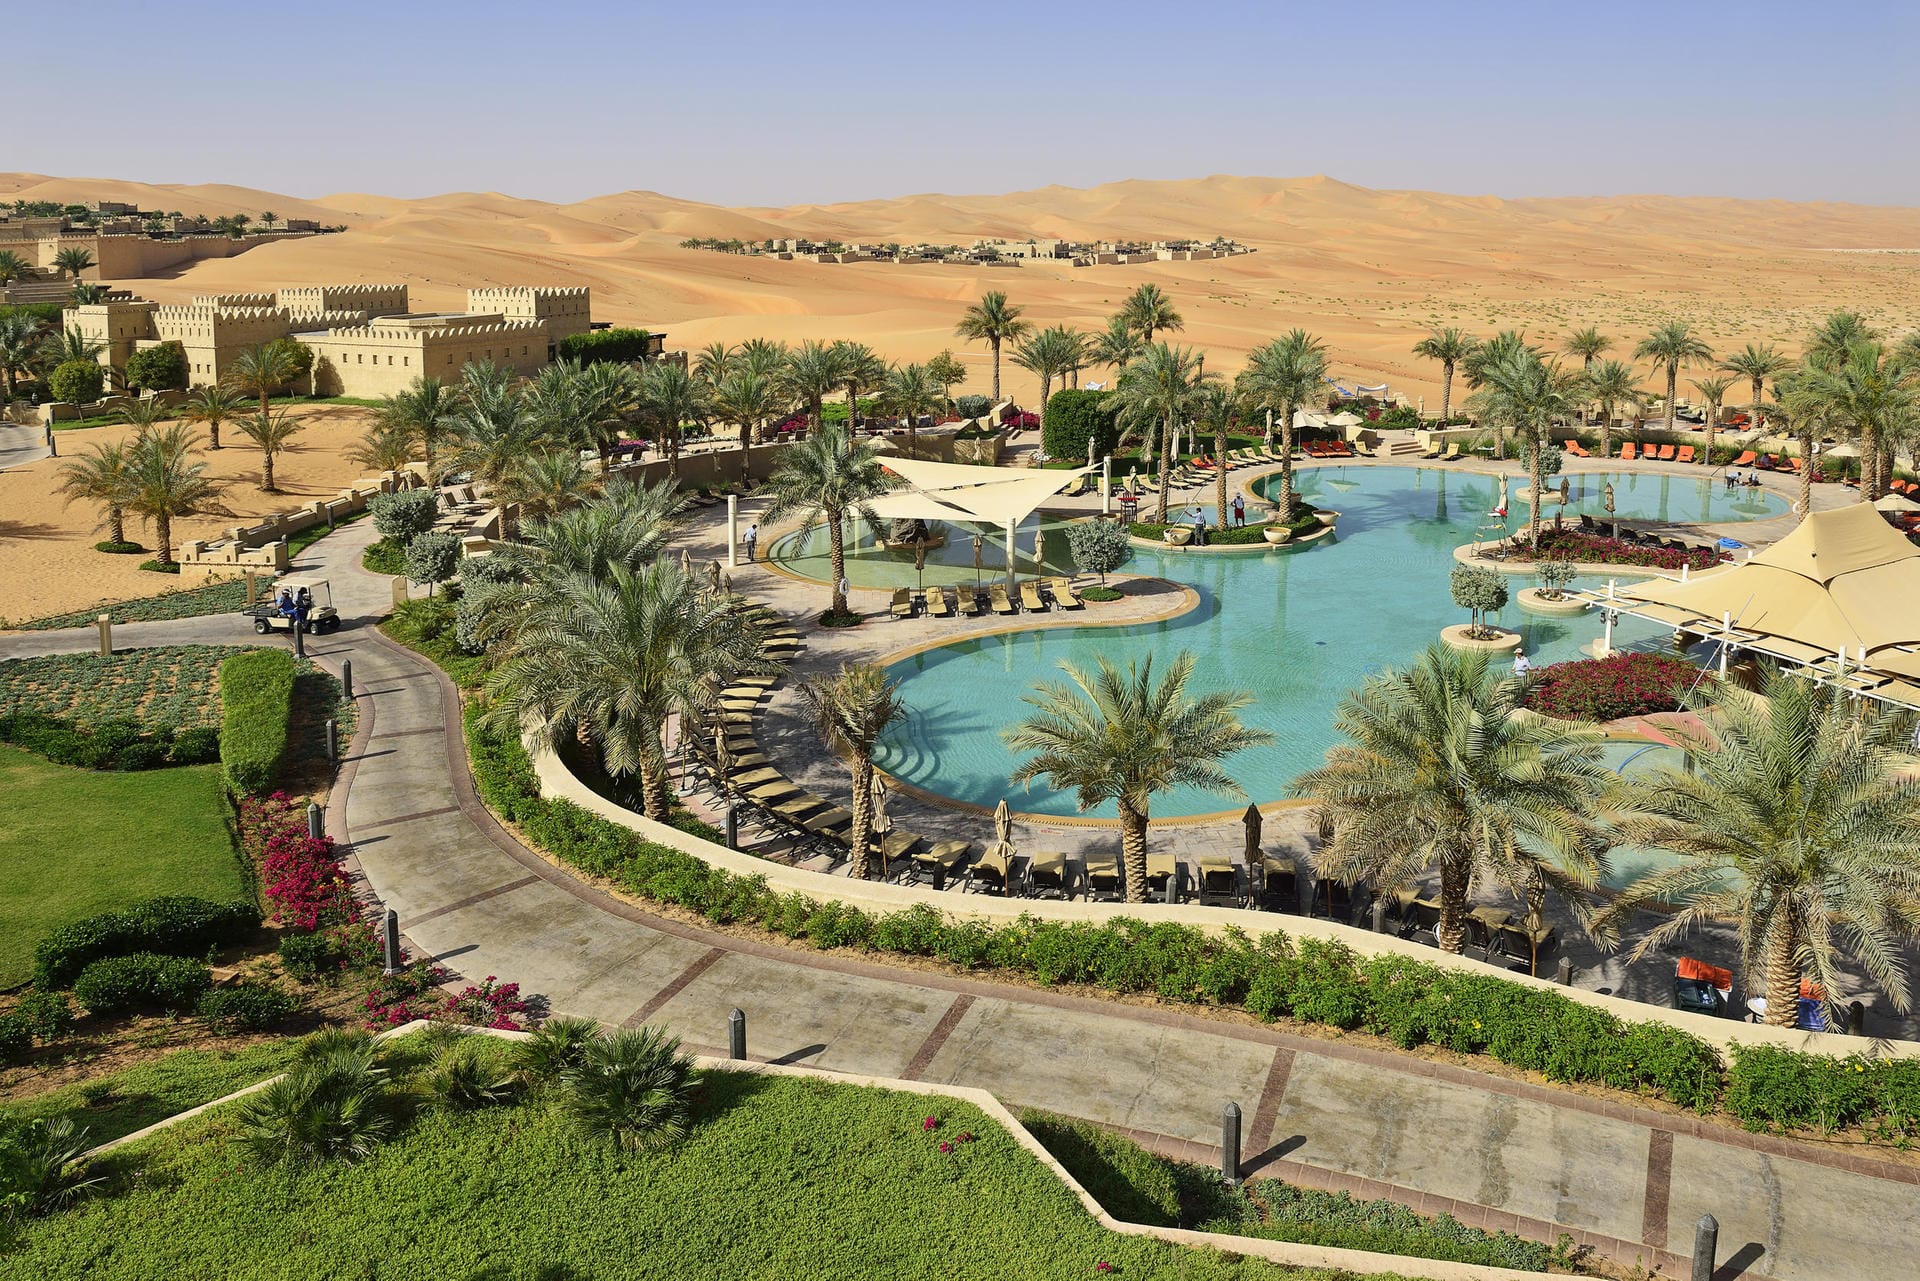 Das Wüsten-Luxus-Hotel "Anantara Qasr Al Sarab" ist im Stil eines Wüstenforts gebaut und befindet sich inmitten von hohen Sanddünen.